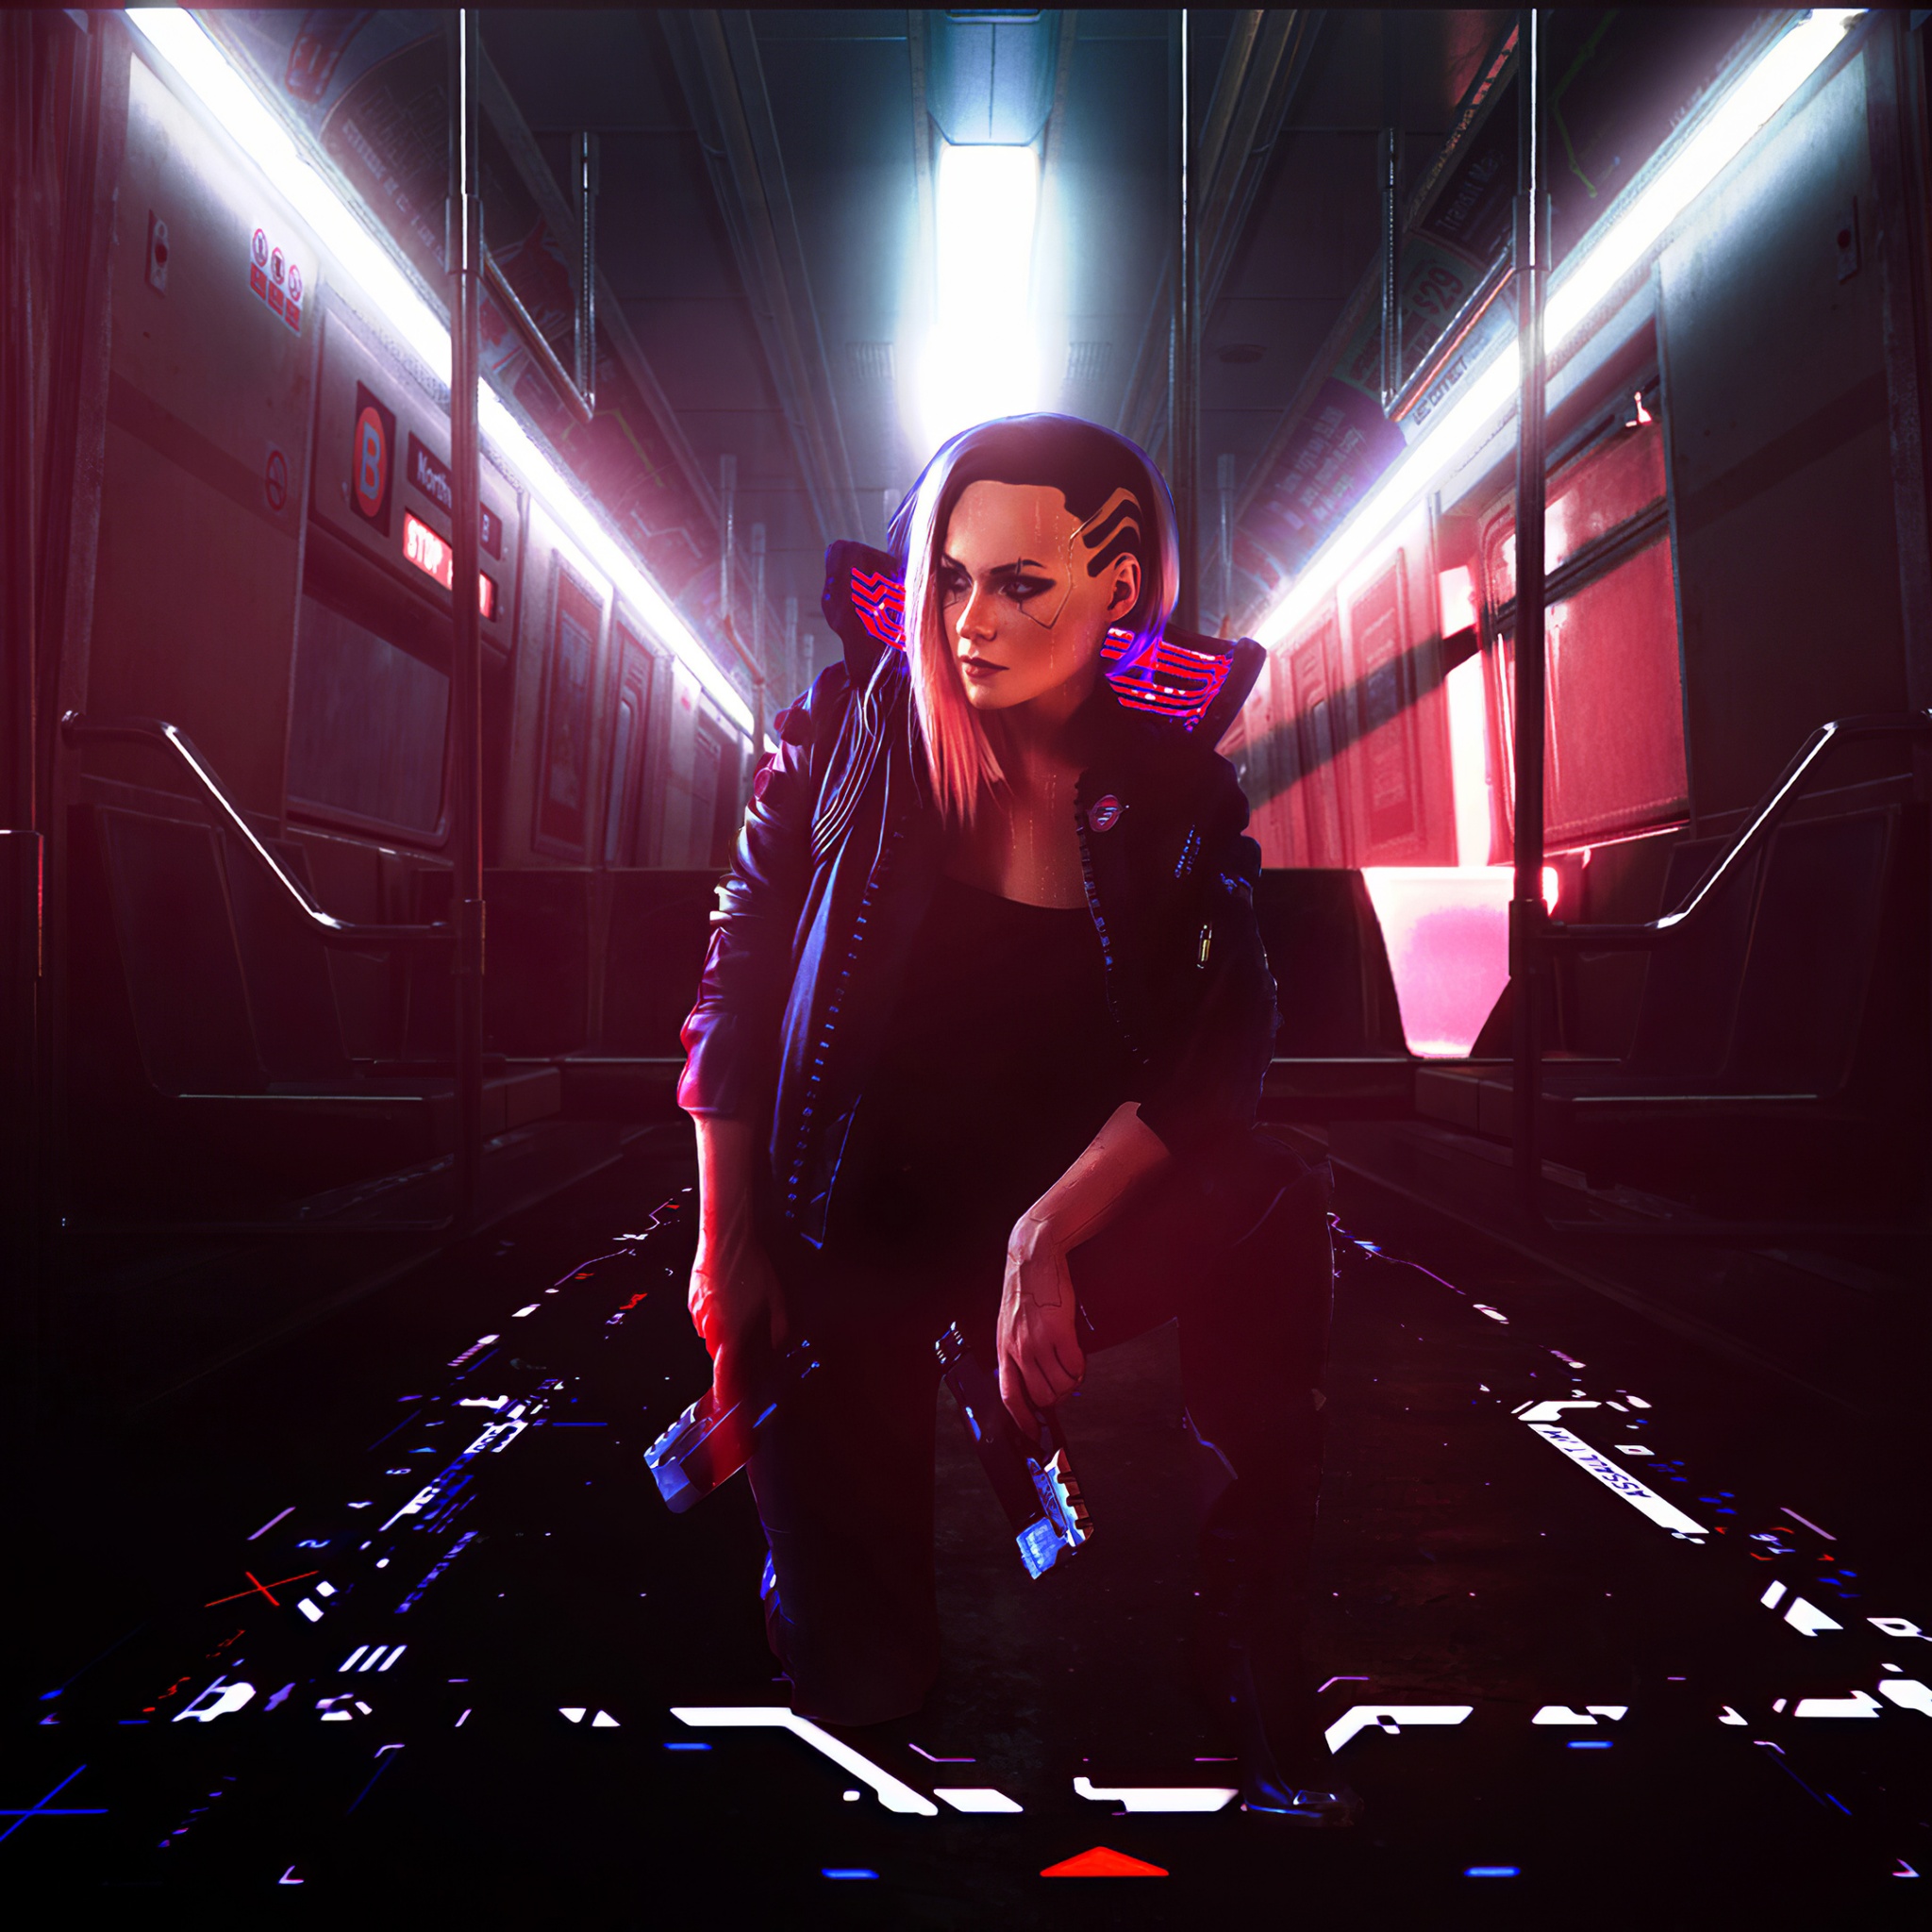 Female V 4K Wallpaper, Cyberpunk 2077, Cyberpunk girl, Xbox Series X